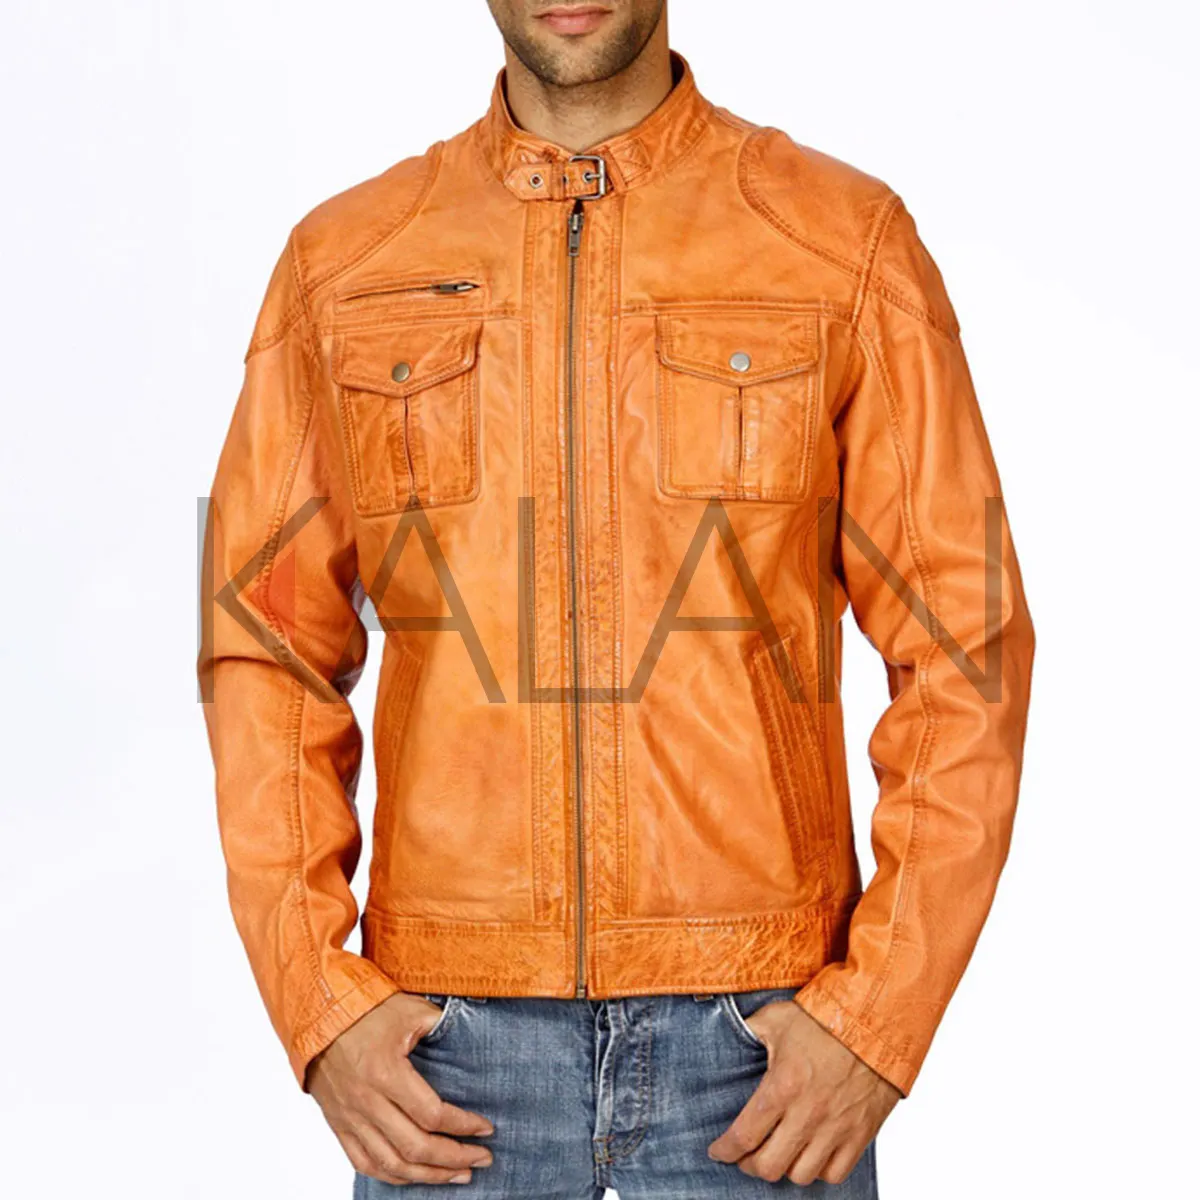 Buckle Neck Collar KLJM4 Men Leather Jacket Washed Sheep Skin Orange Color Modern Design Blouson